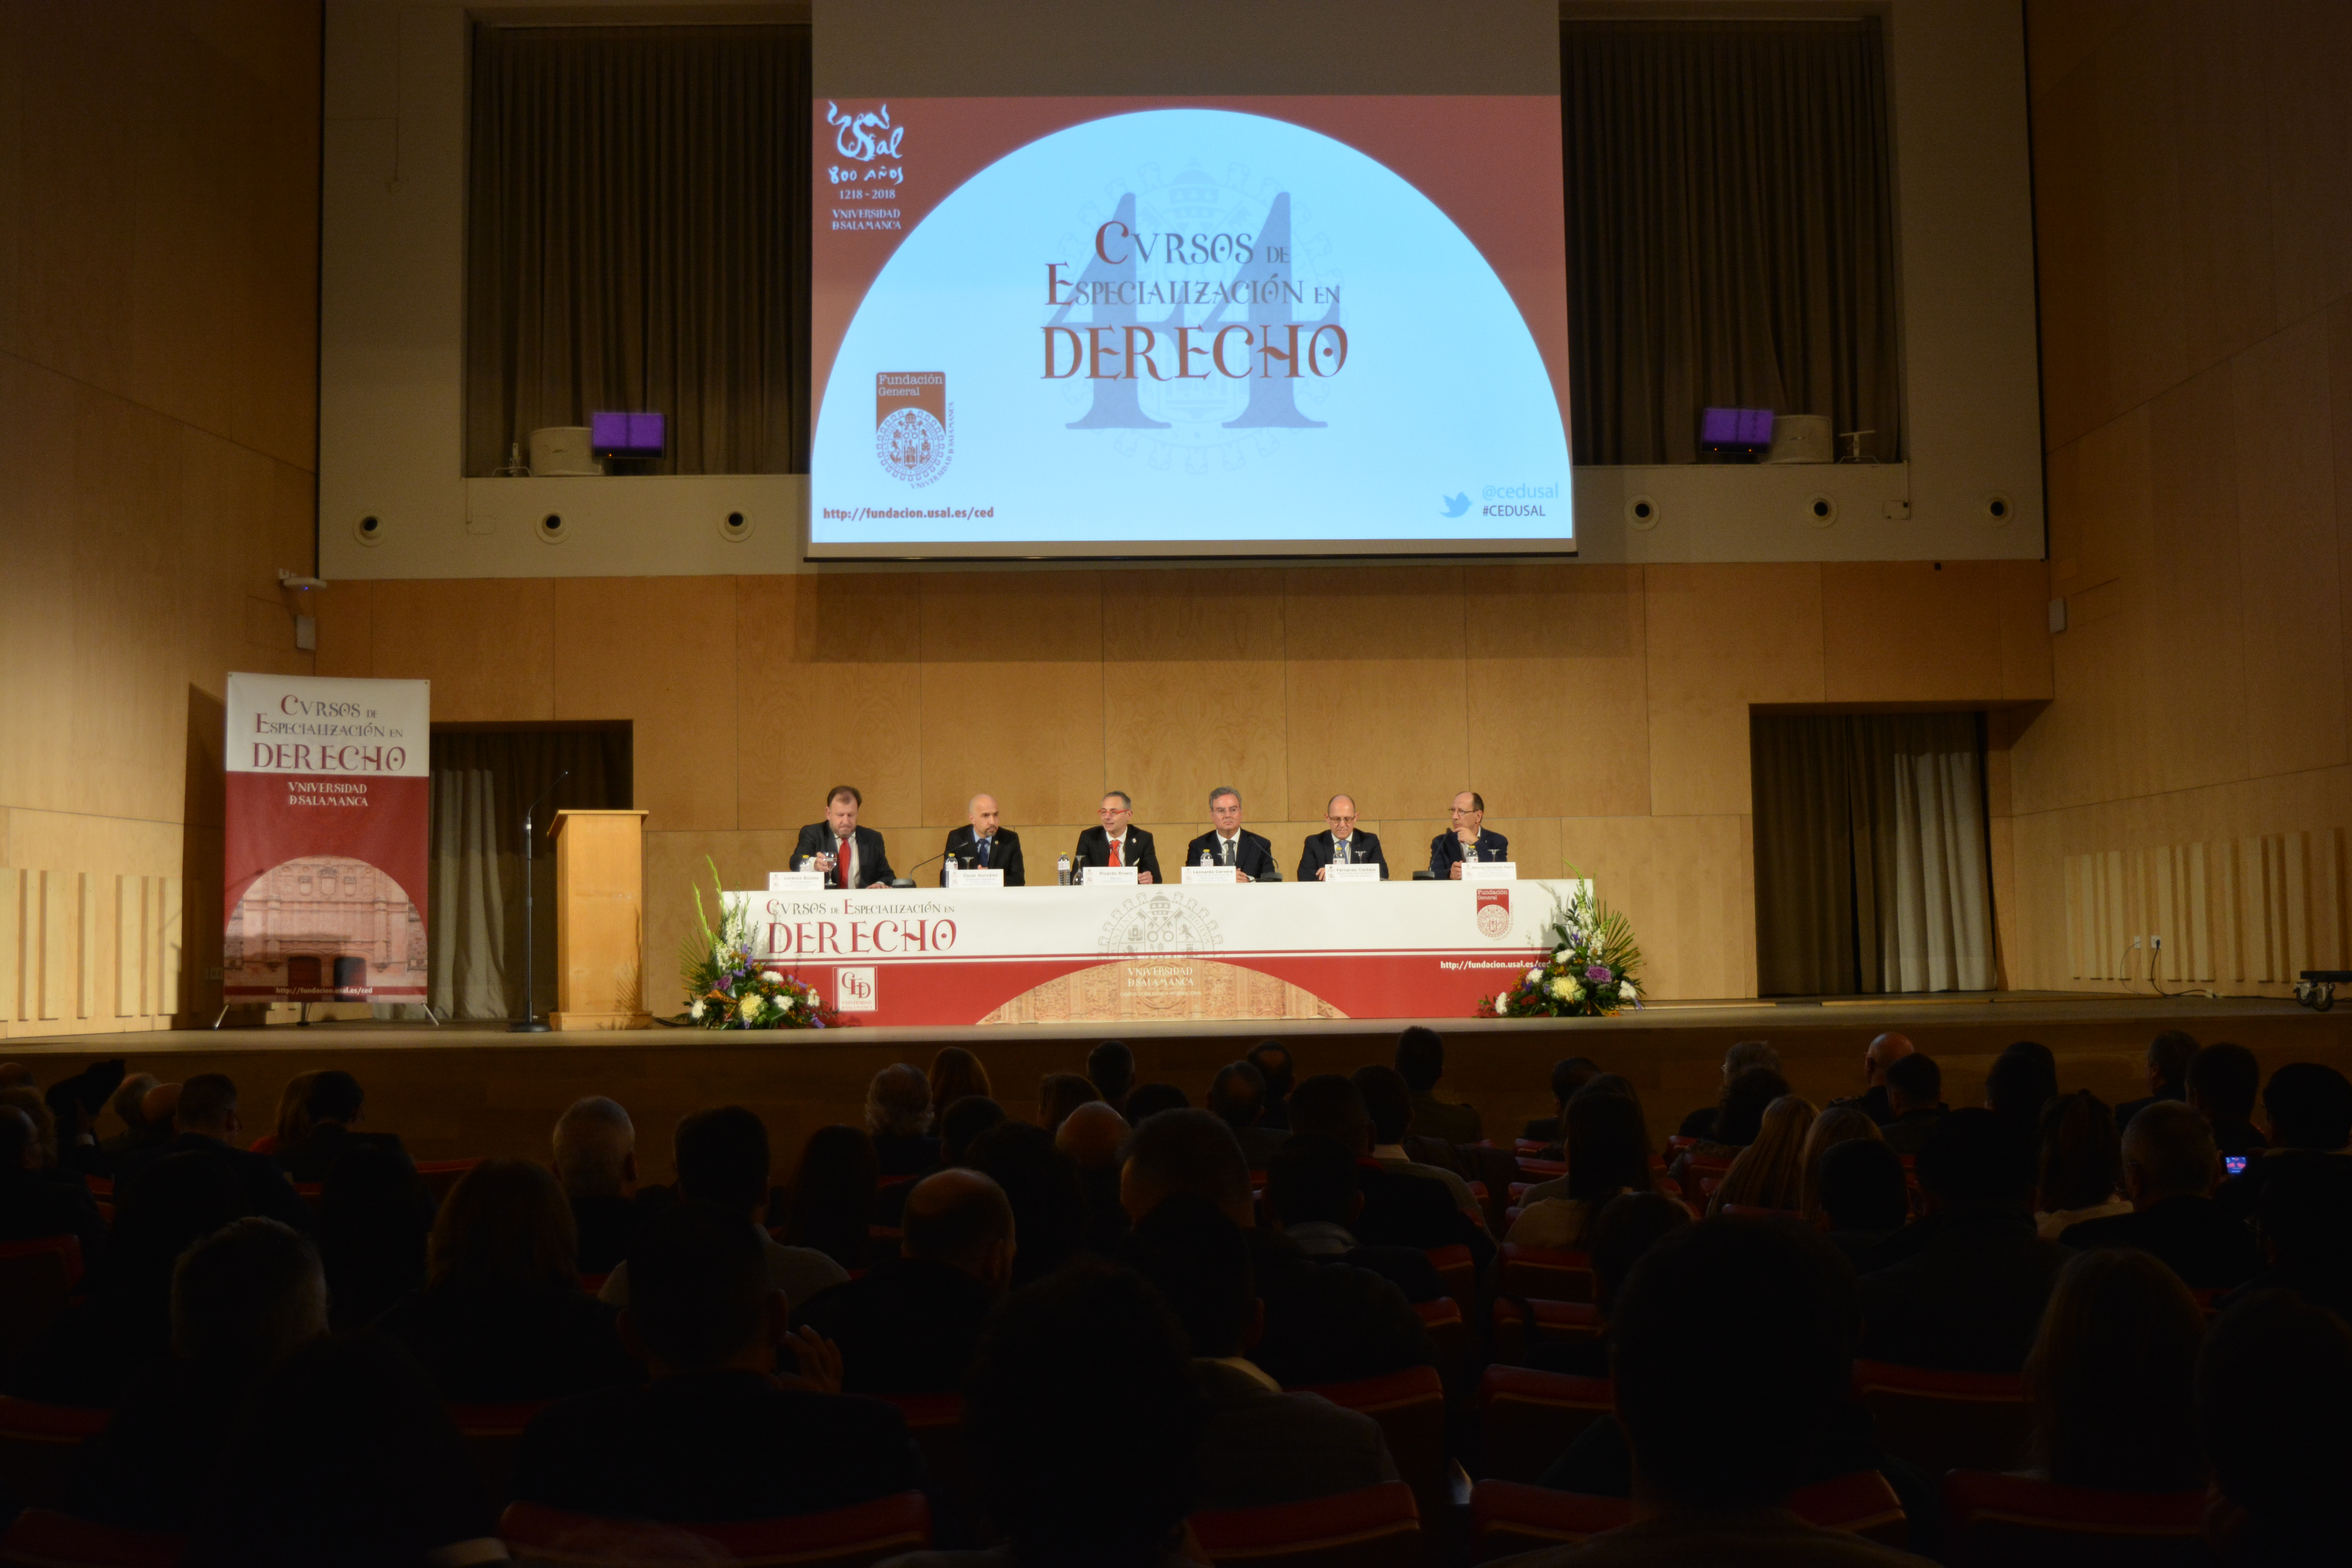 La Universidad de Salamanca recibe a cerca de 300 juristas en la 44ª edición de sus Cursos de Especialización en Derecho